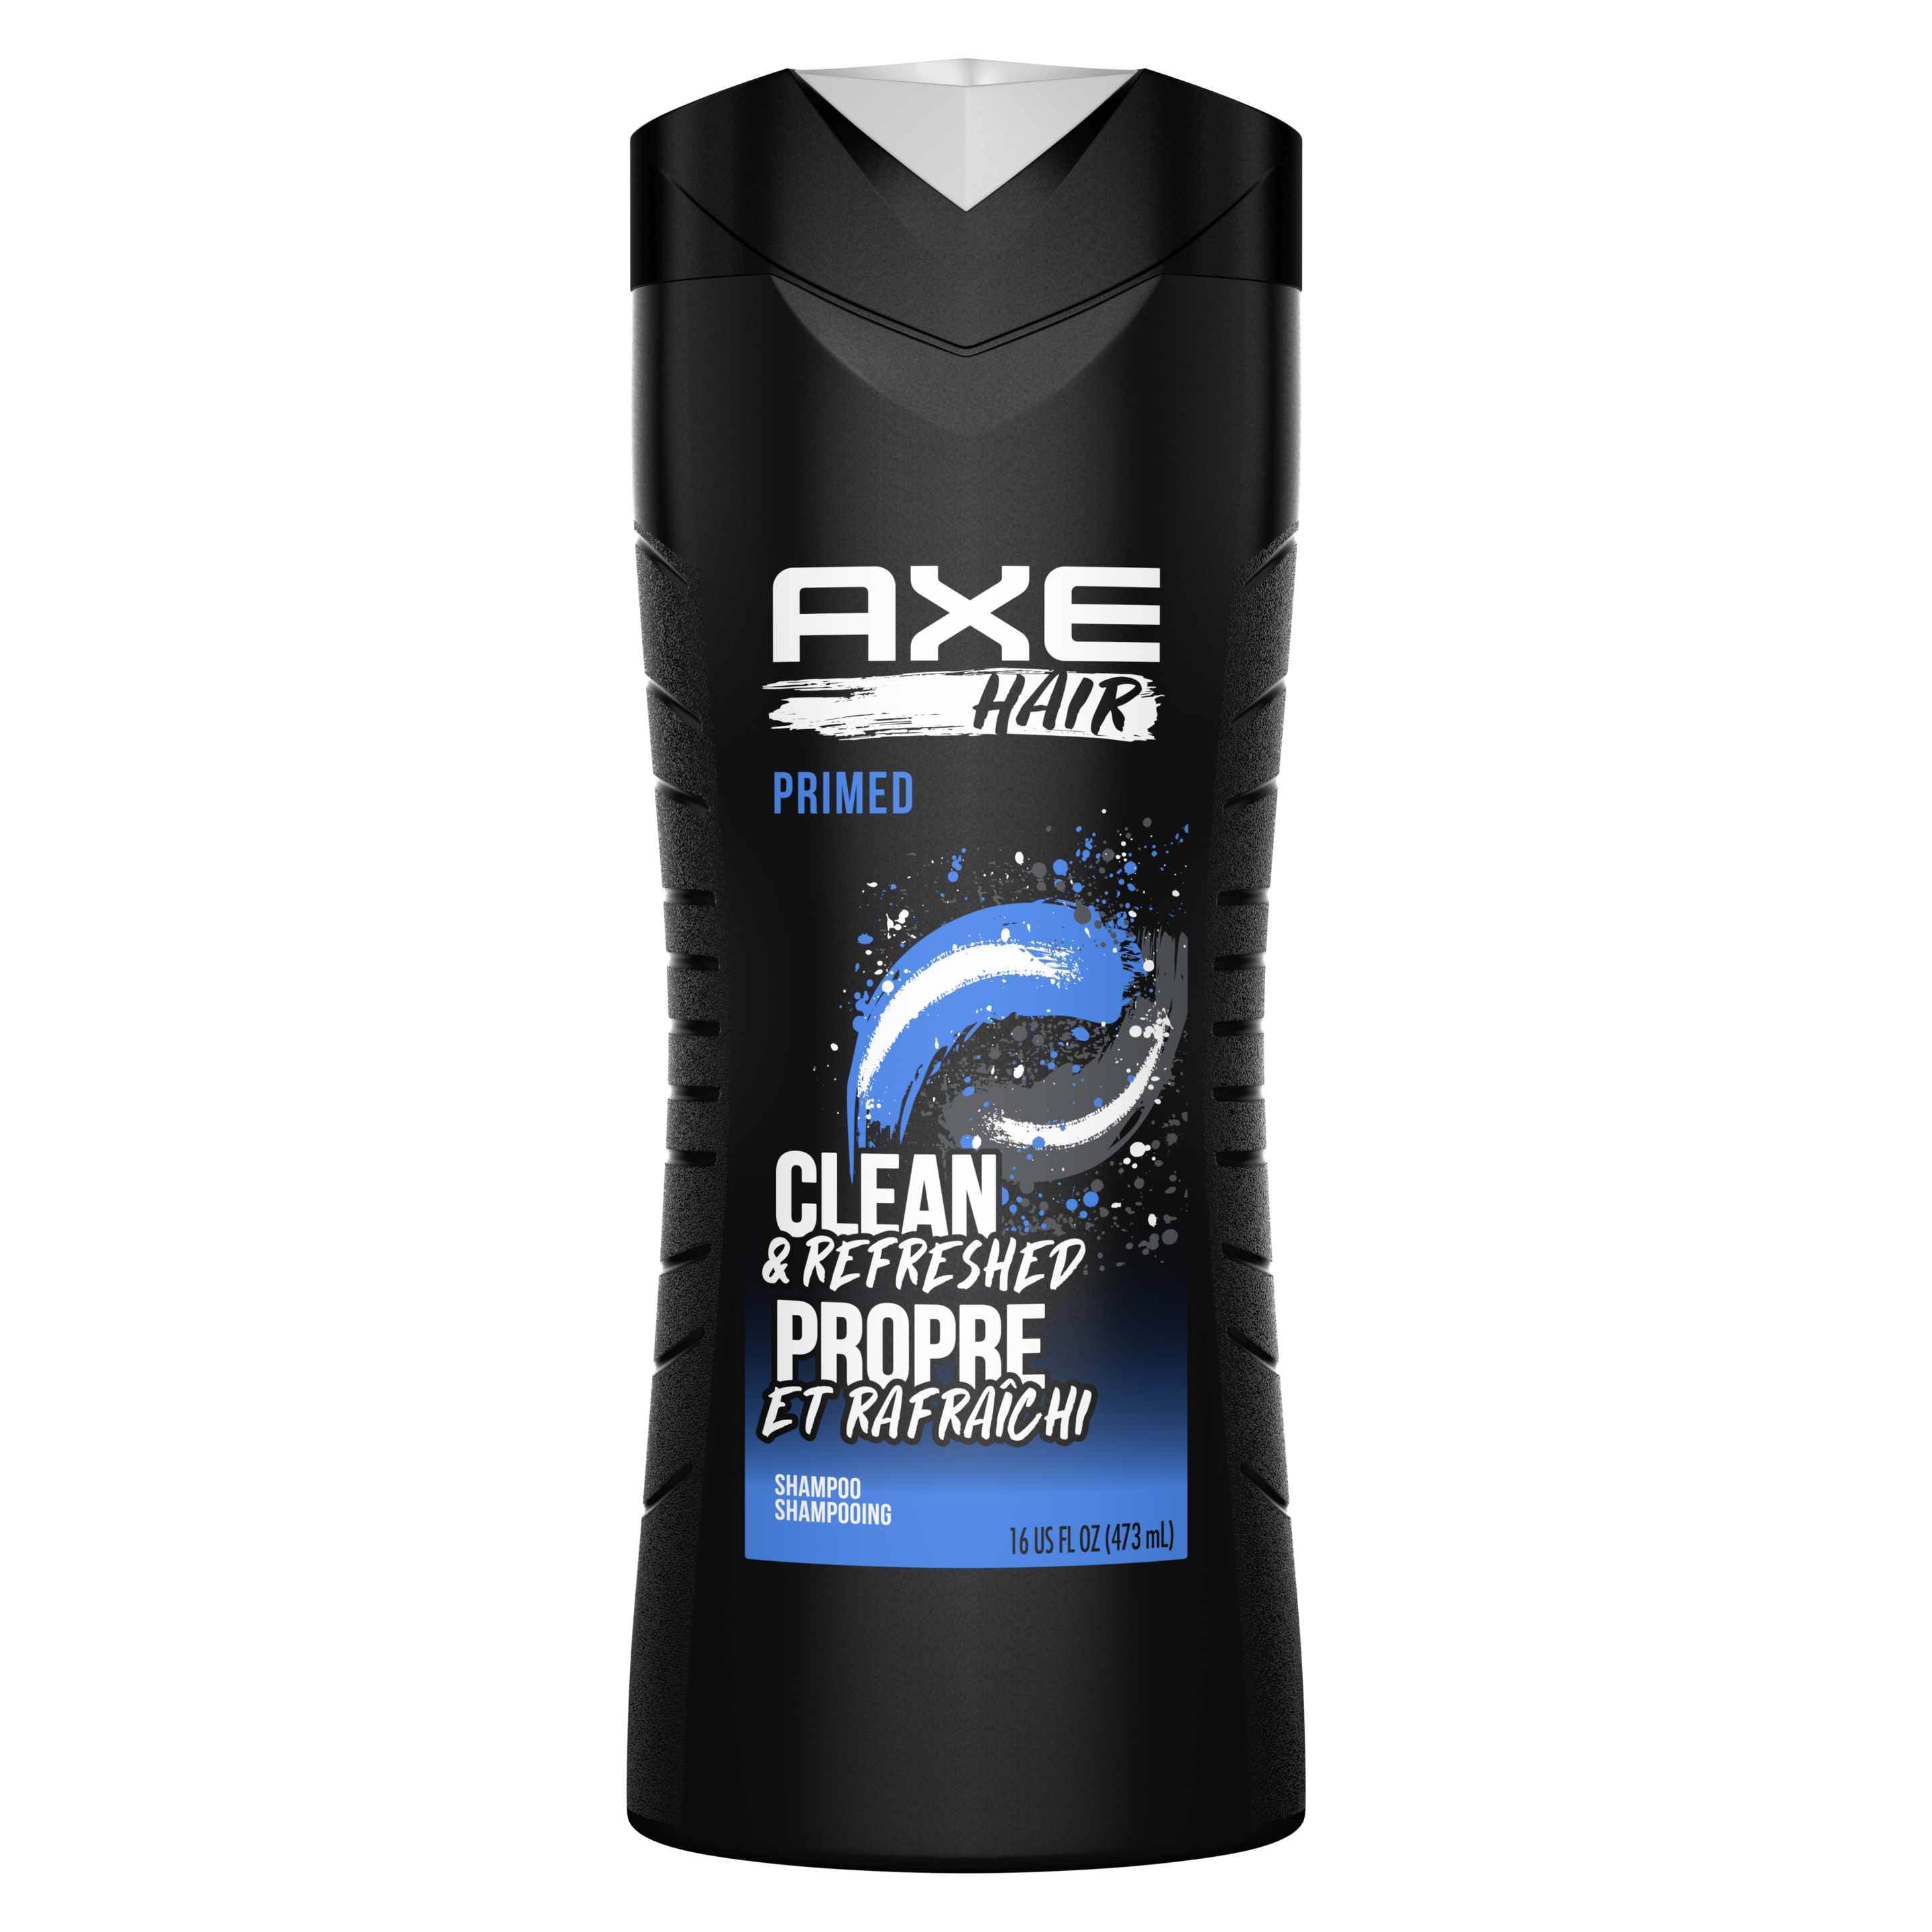 AXE Hair Primed Shampoo